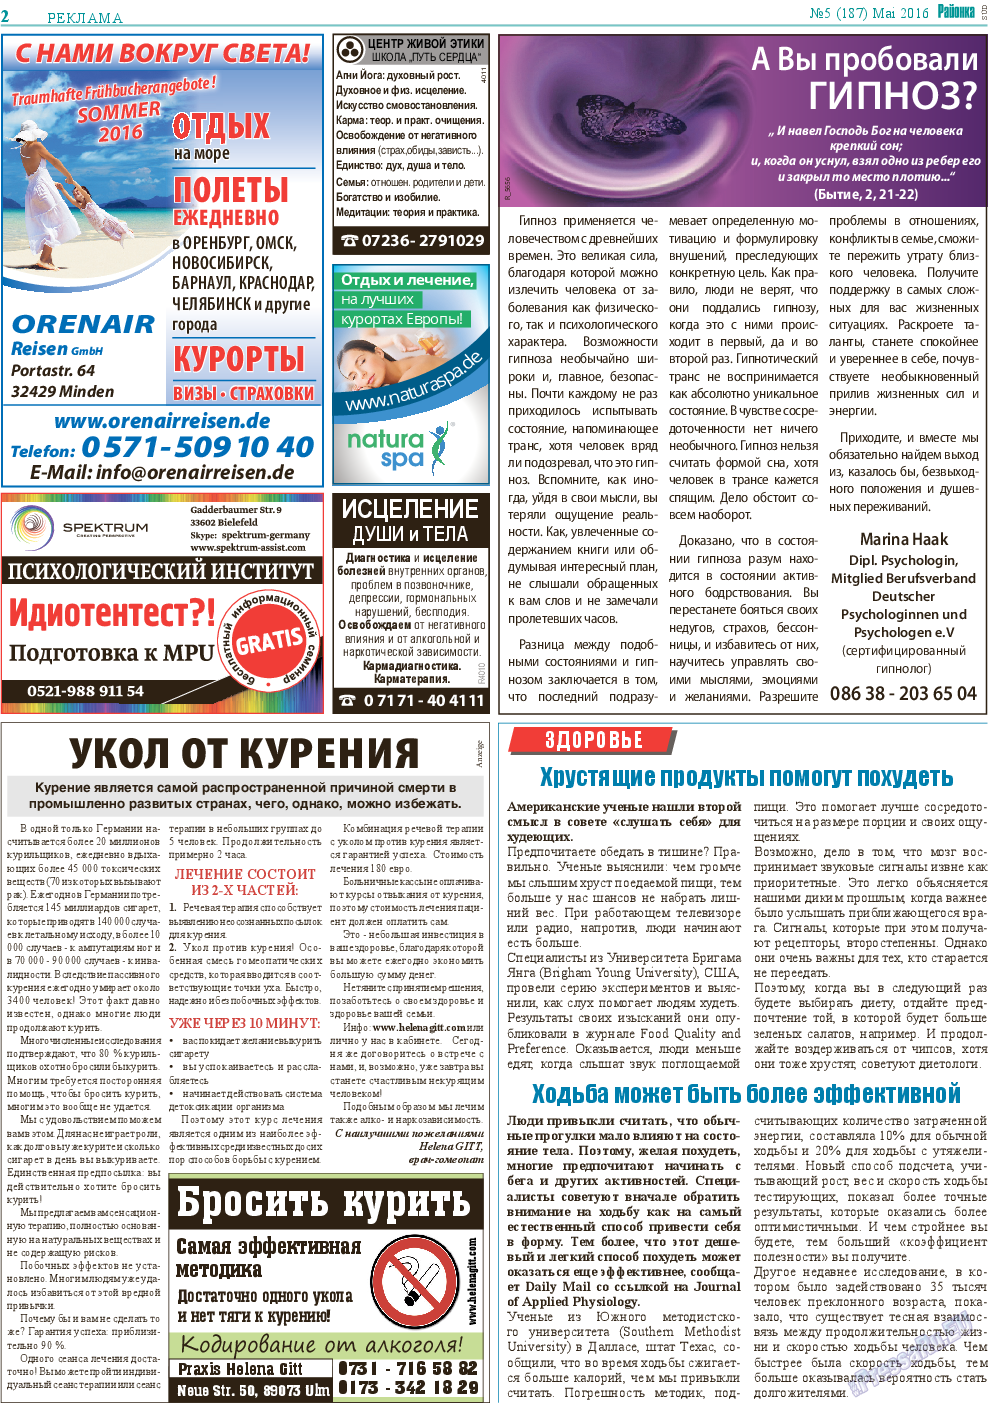 Районка-Süd-West, газета. 2016 №5 стр.2